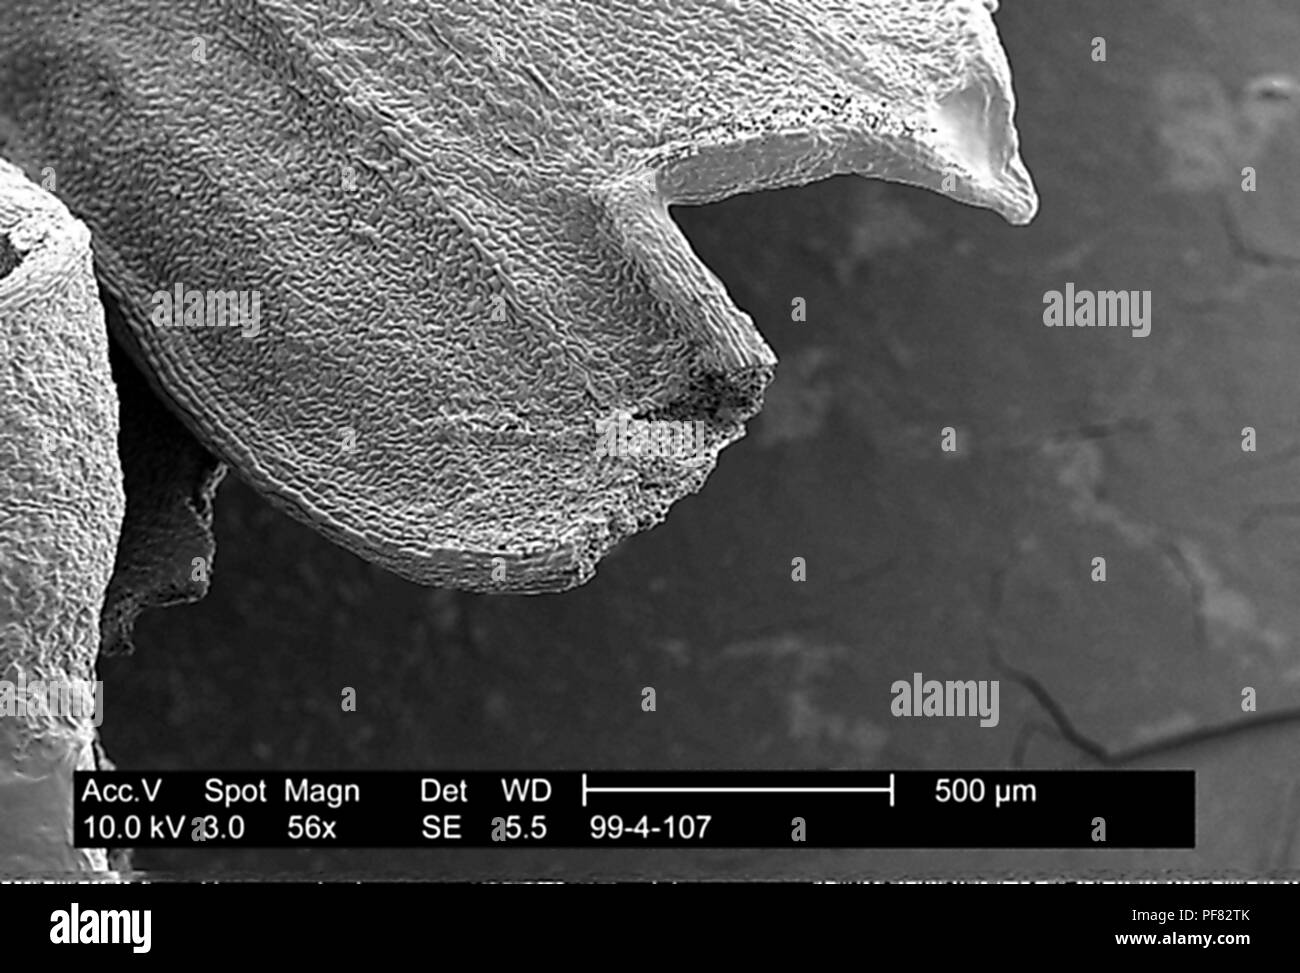 Stark texturierten Oberfläche einer petersilie Blatt im 56x vergrößert dargestellt Rasterelektronenmikroskopische (SEM) Bild, 1999. Mit freundlicher Seuchenkontrollzentren (CDC)/Janice Haney Carr. () Stockfoto